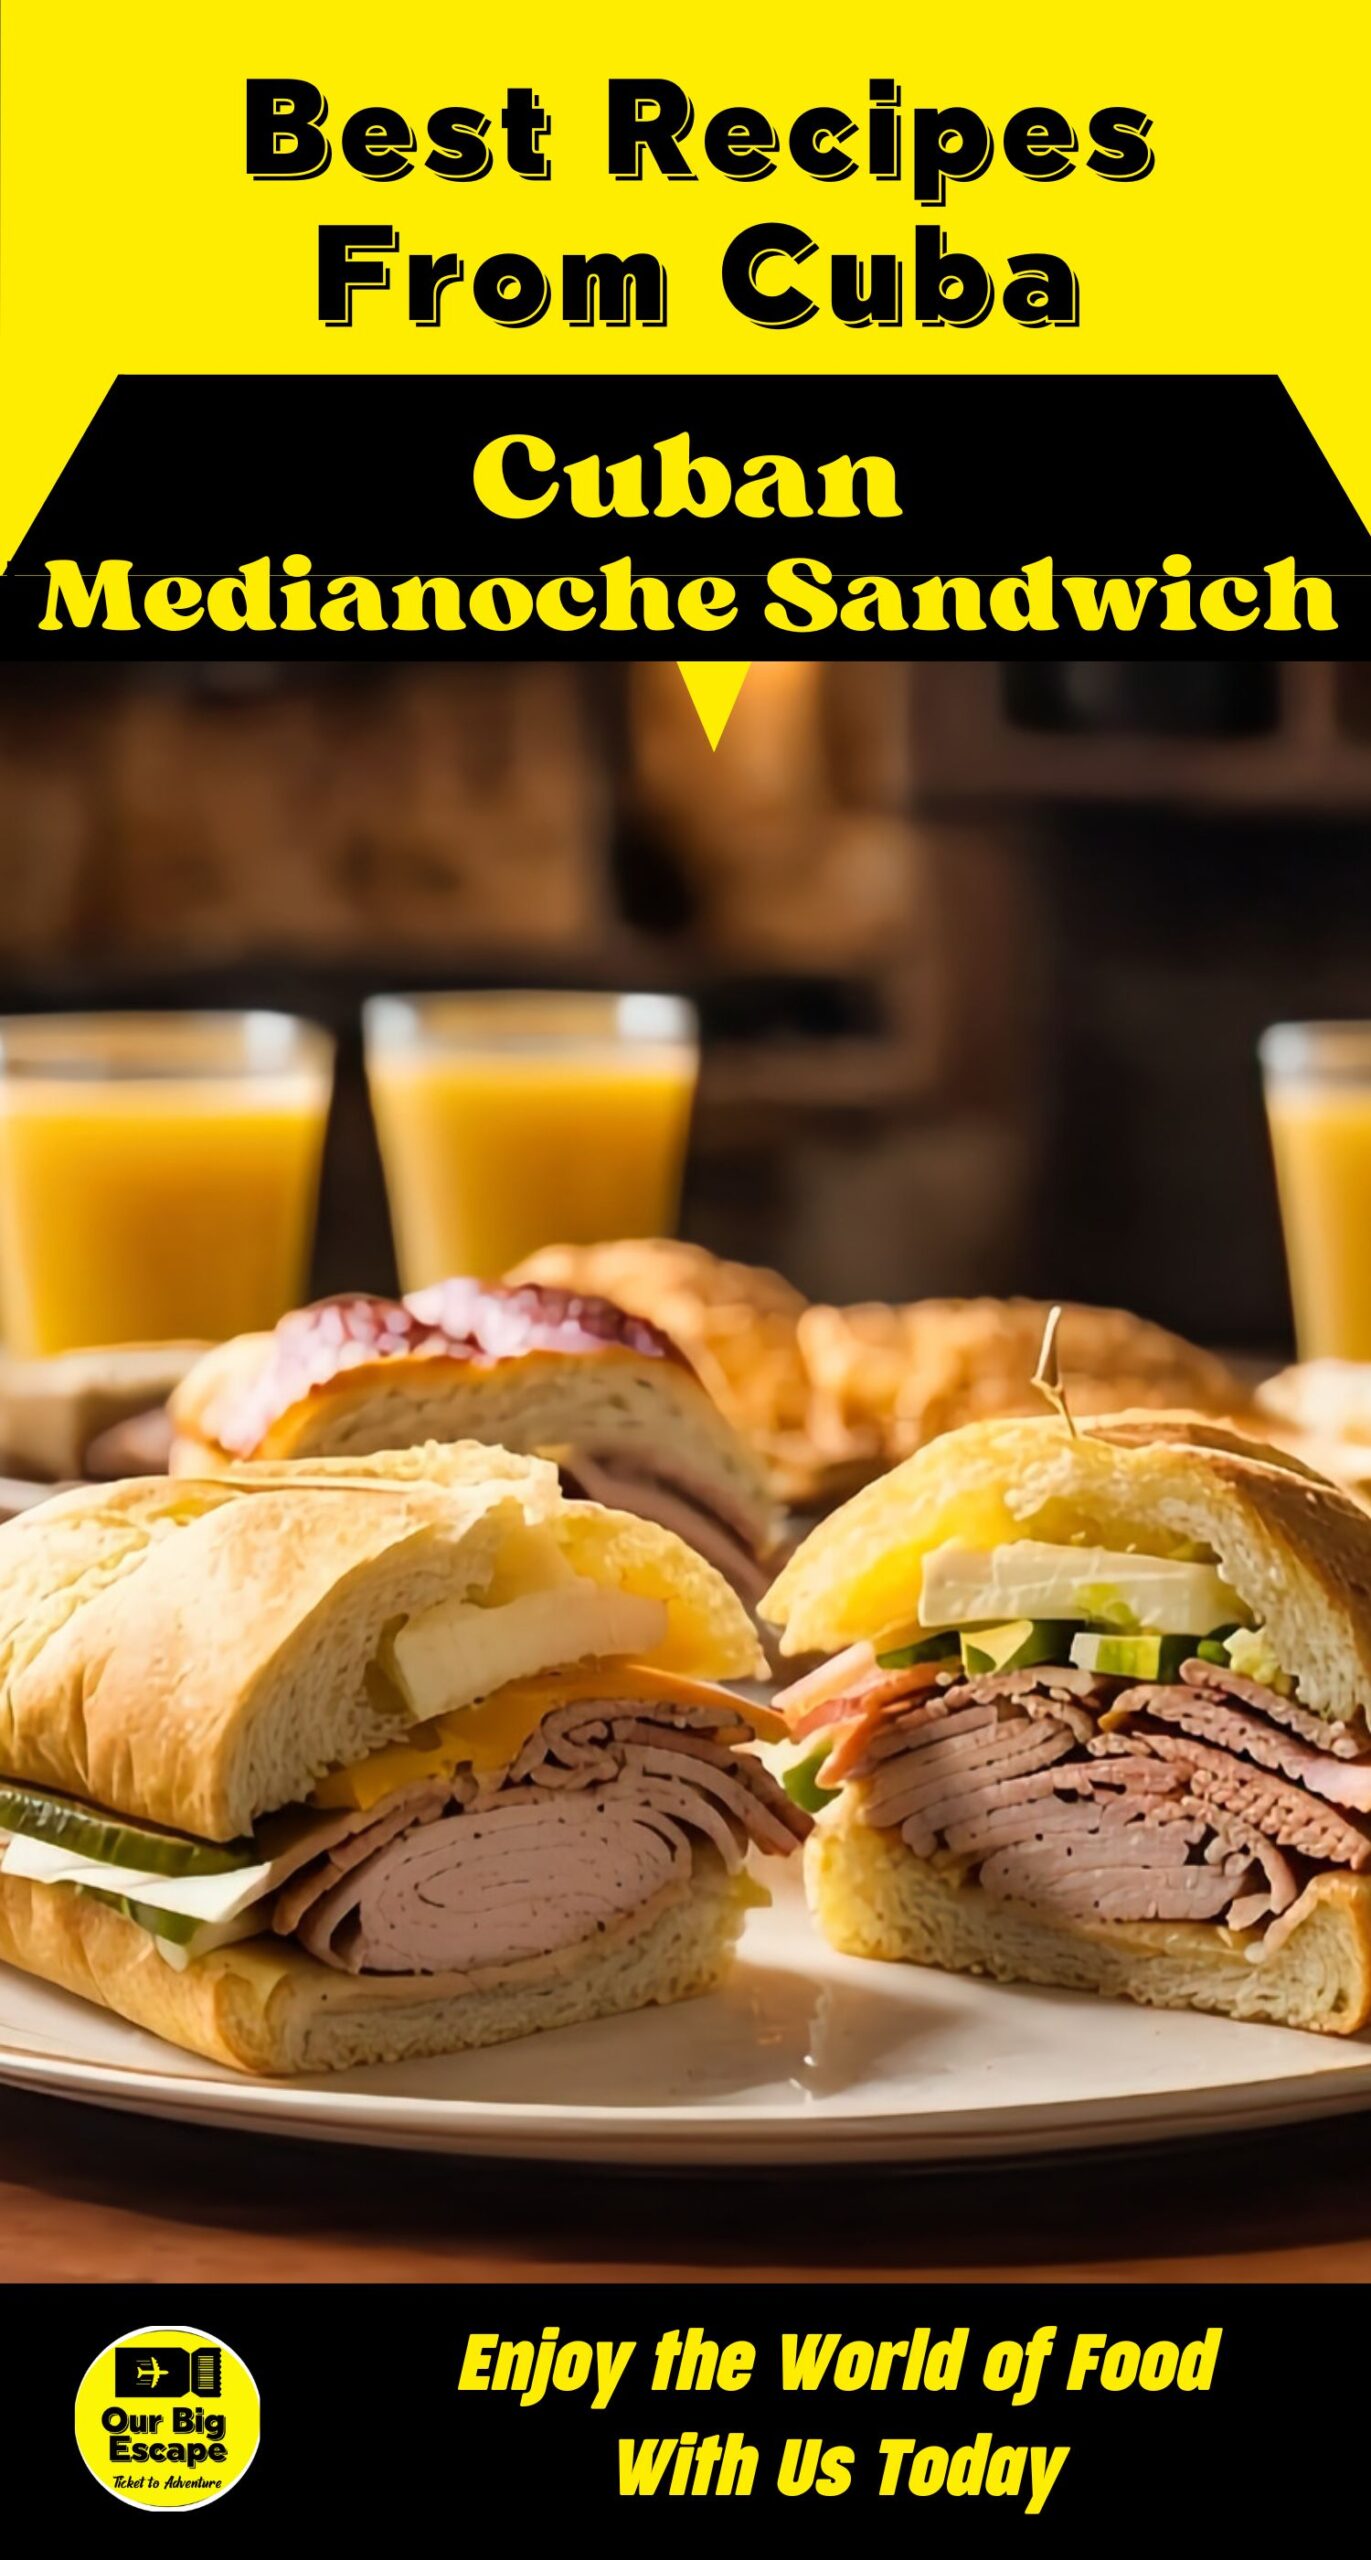 19. Cuban Medianoche Sandwich